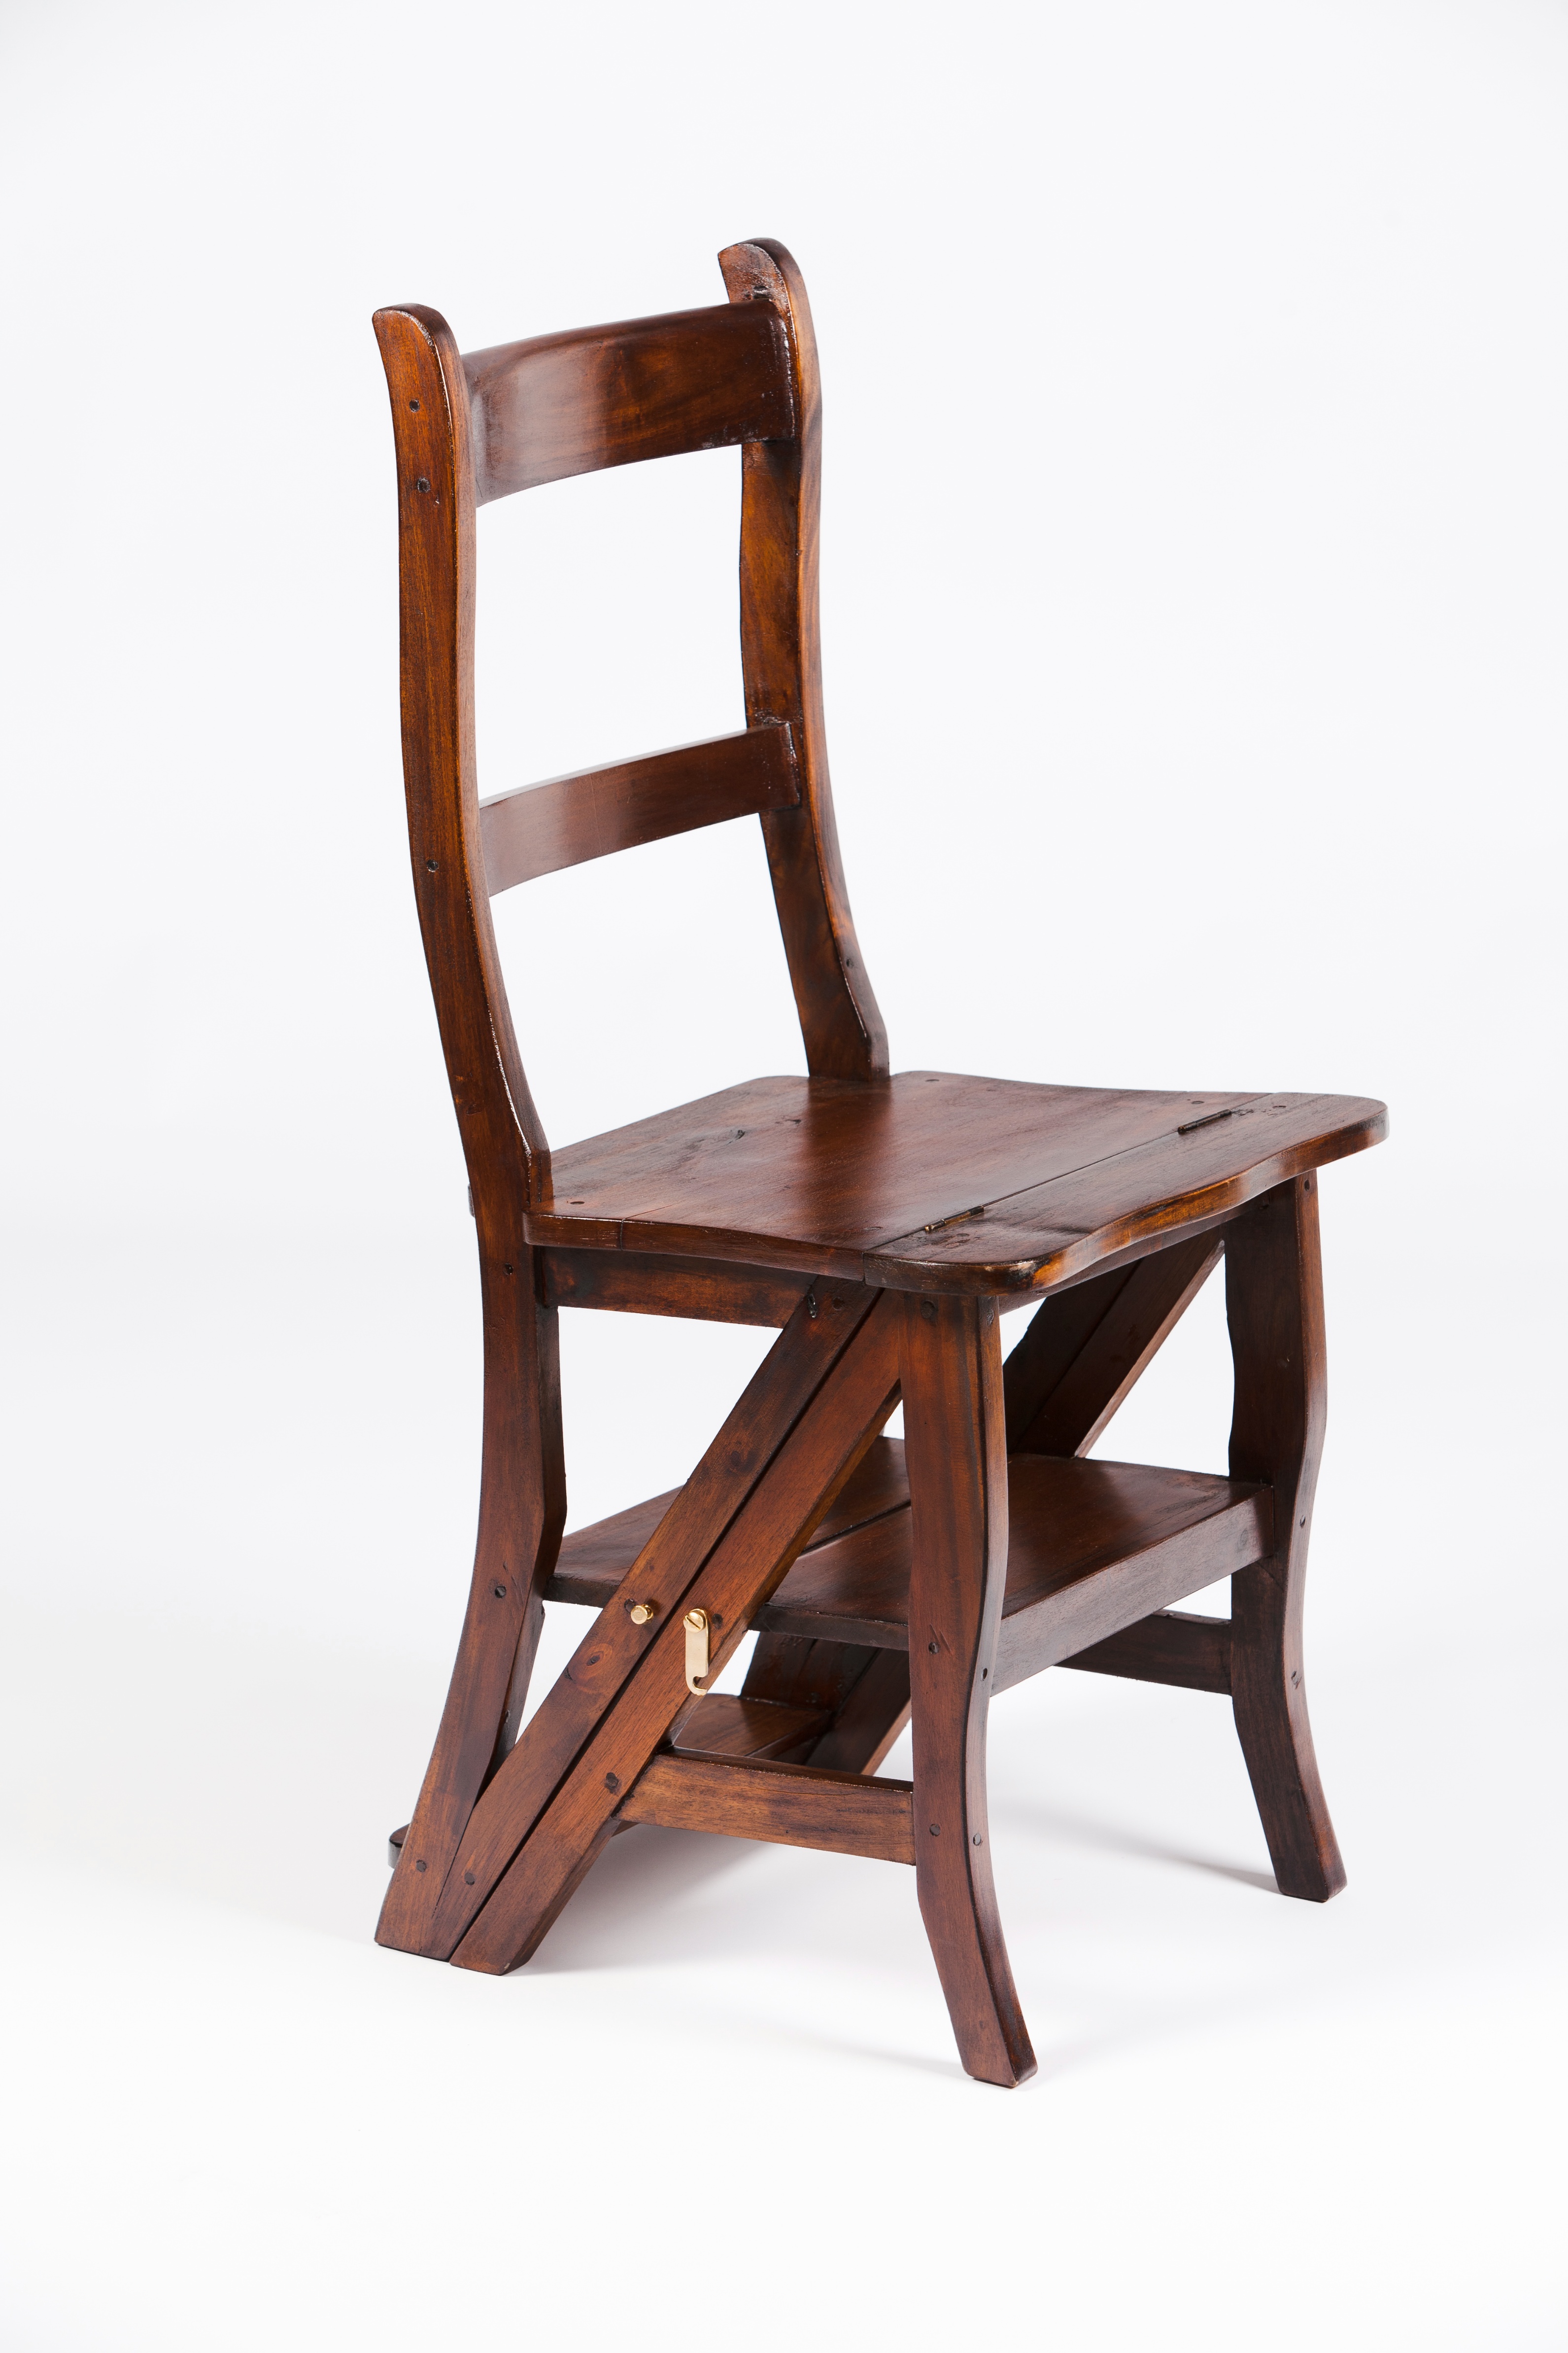 A library chair / step ladderOak 20th century90x44x45 cm